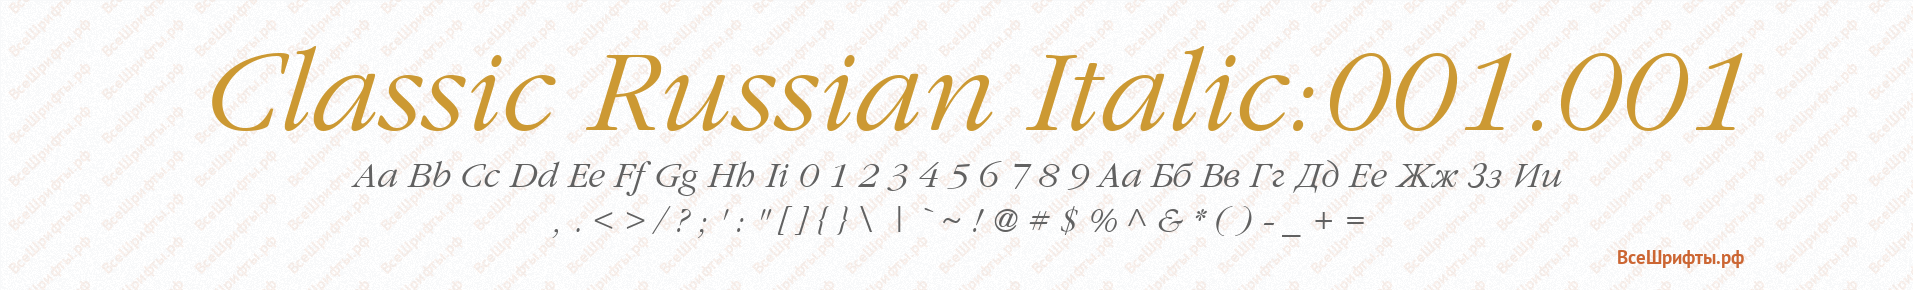 Шрифт Classic Russian Italic:001.001